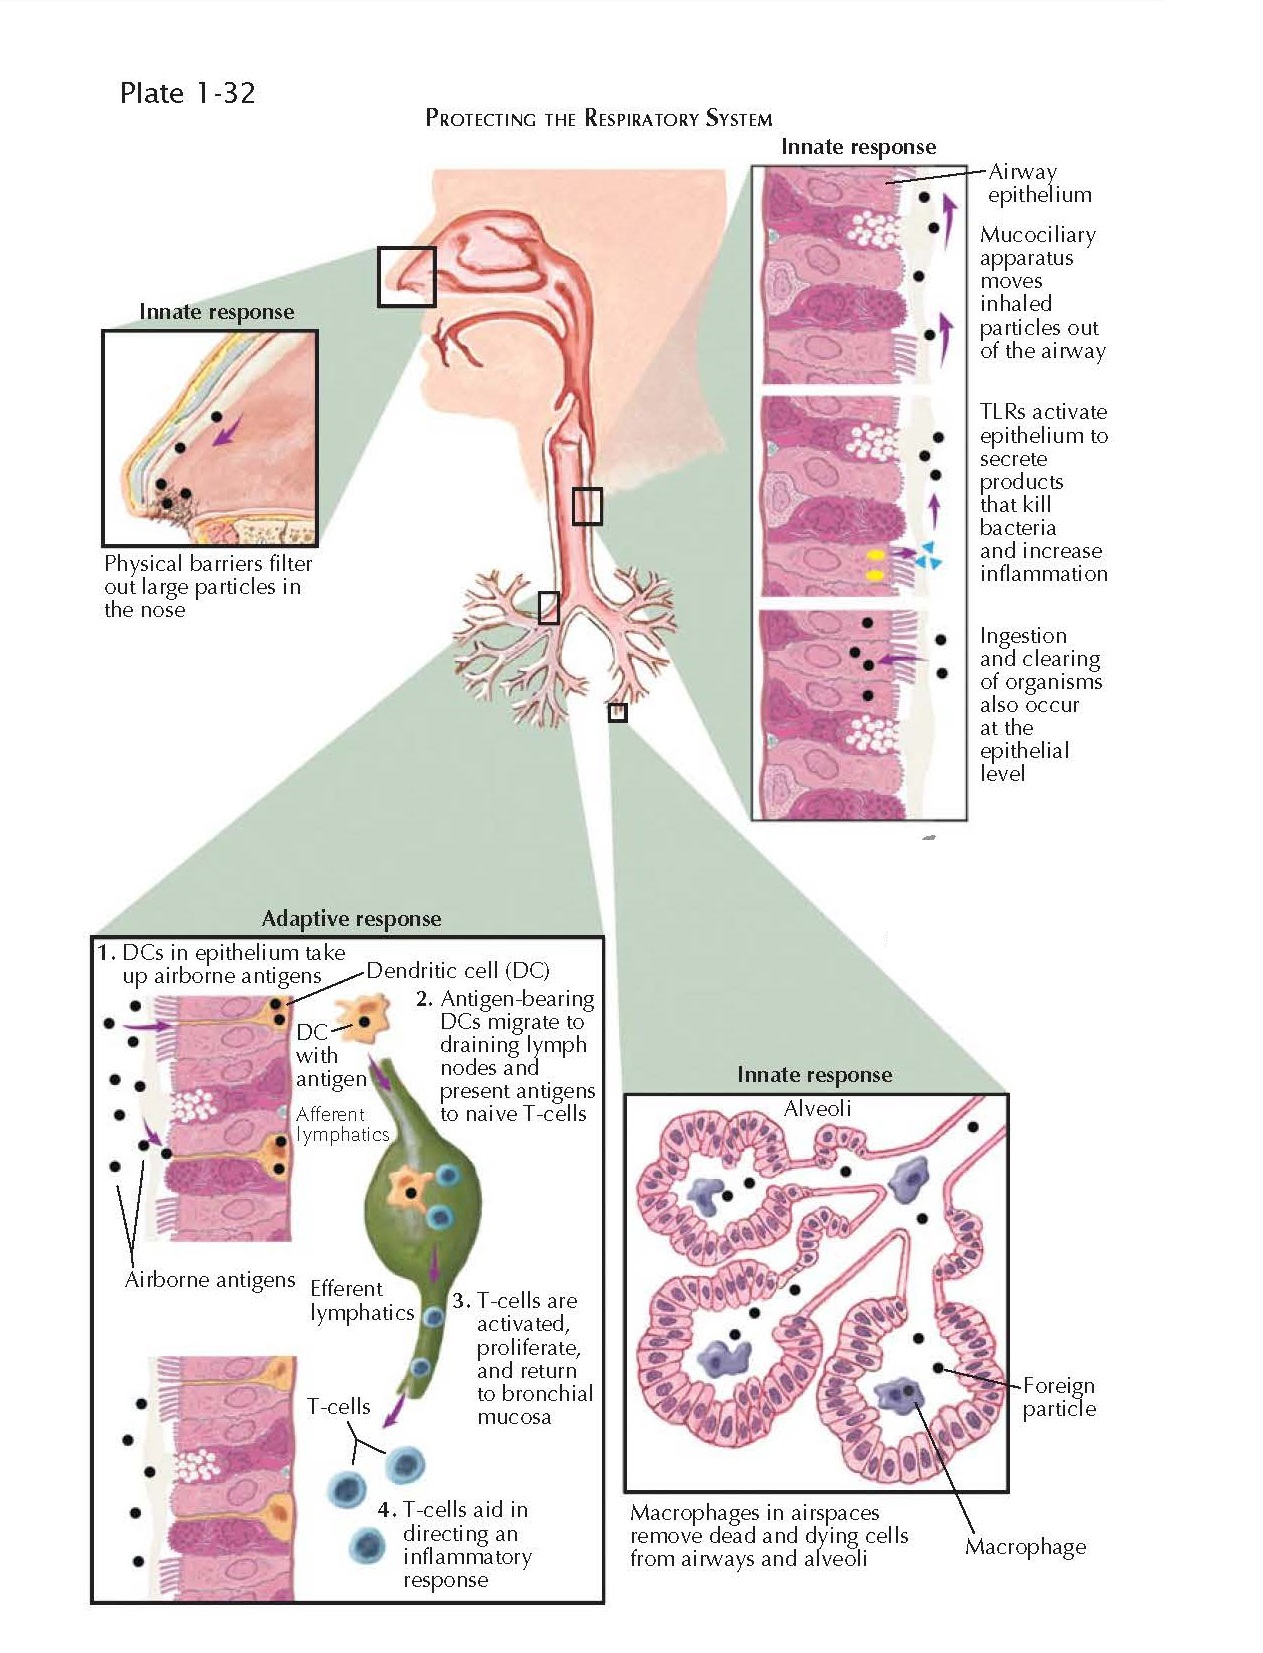 PULMONARY IMMUNOLOGY: LYMPHOCYTES, MAST CELLS, EOSINOPHILS, AND NEUTROPHILS